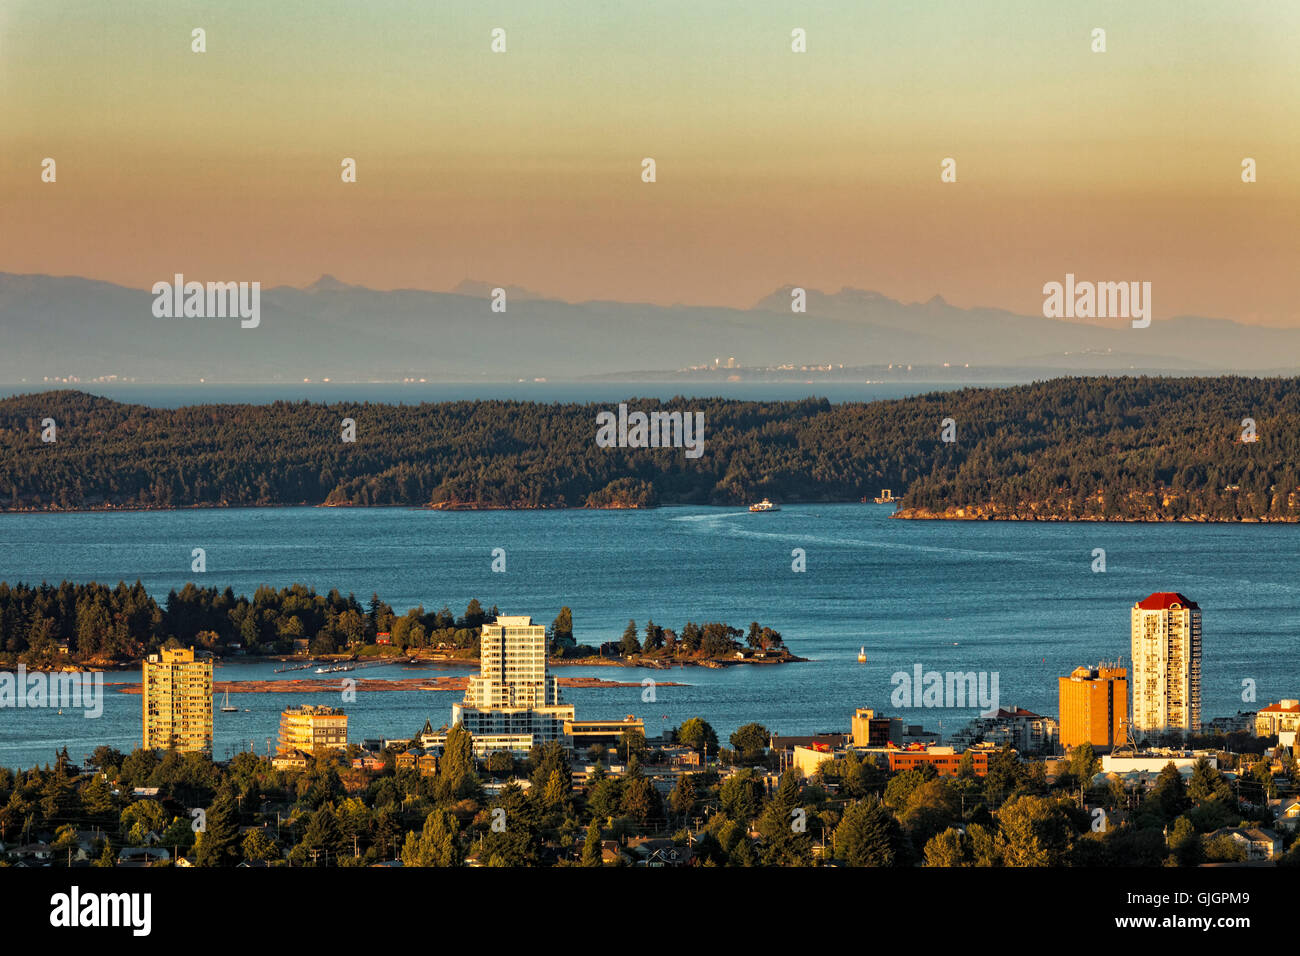 View of city of Nanaimo and BC coastal mountain range-Nanaimo, British Columbia, Canada. Stock Photo